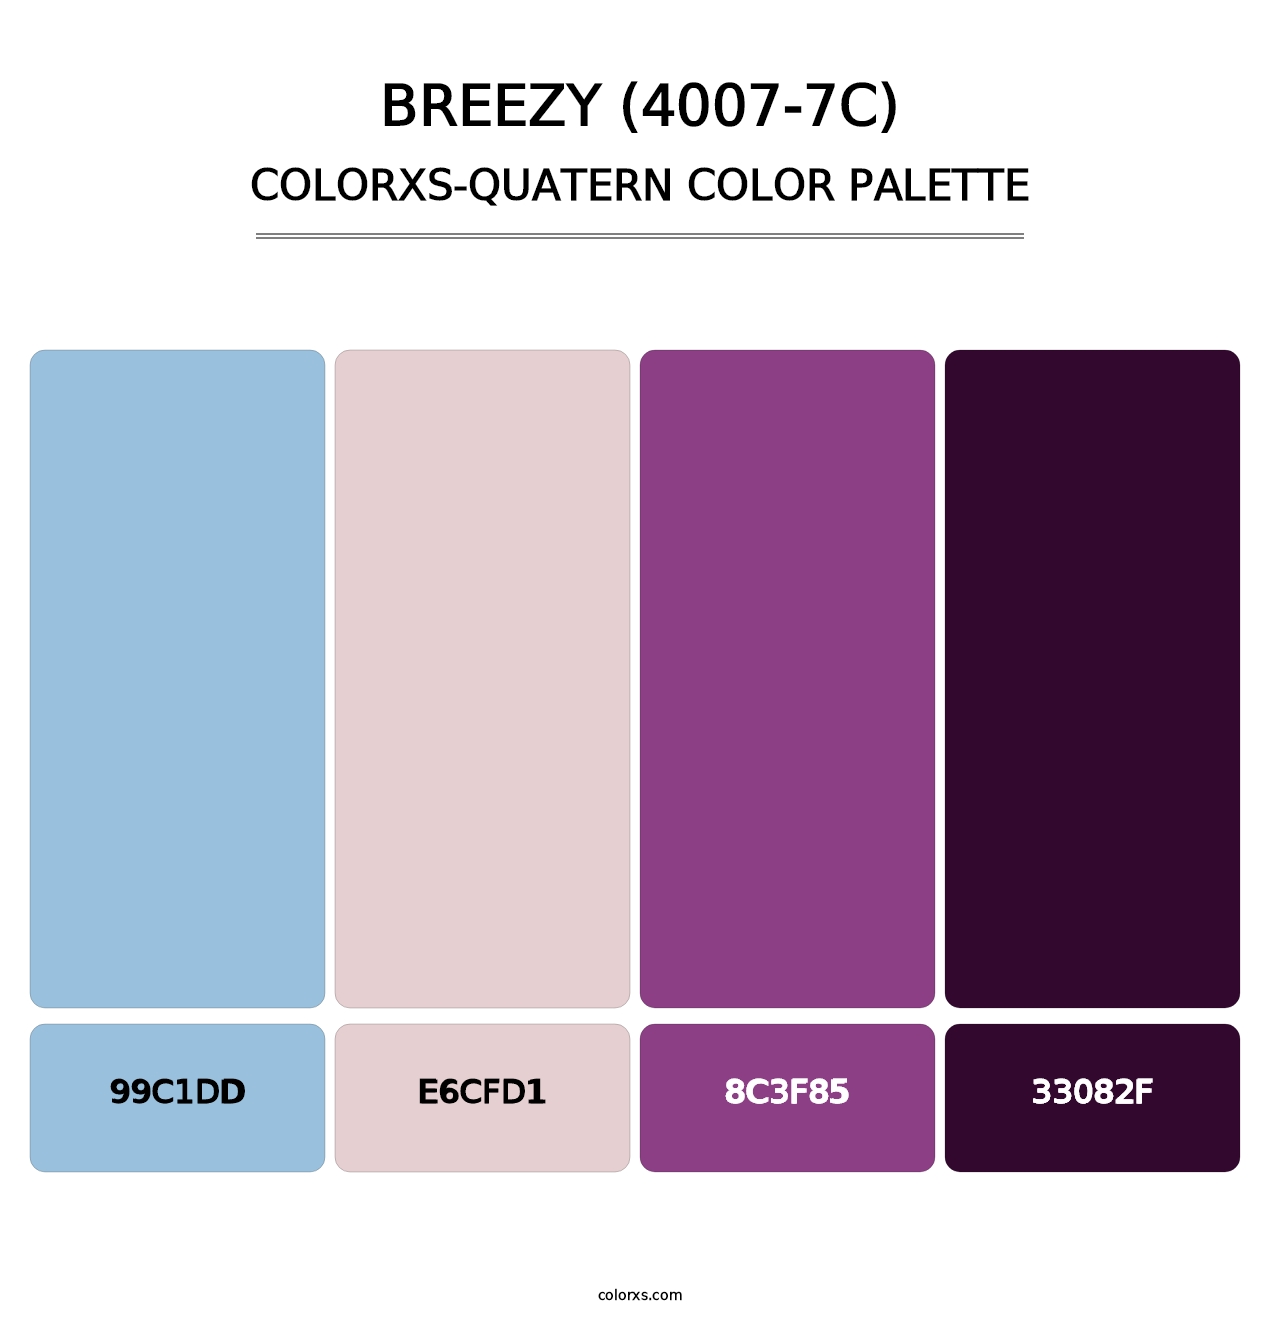 Breezy (4007-7C) - Colorxs Quatern Palette